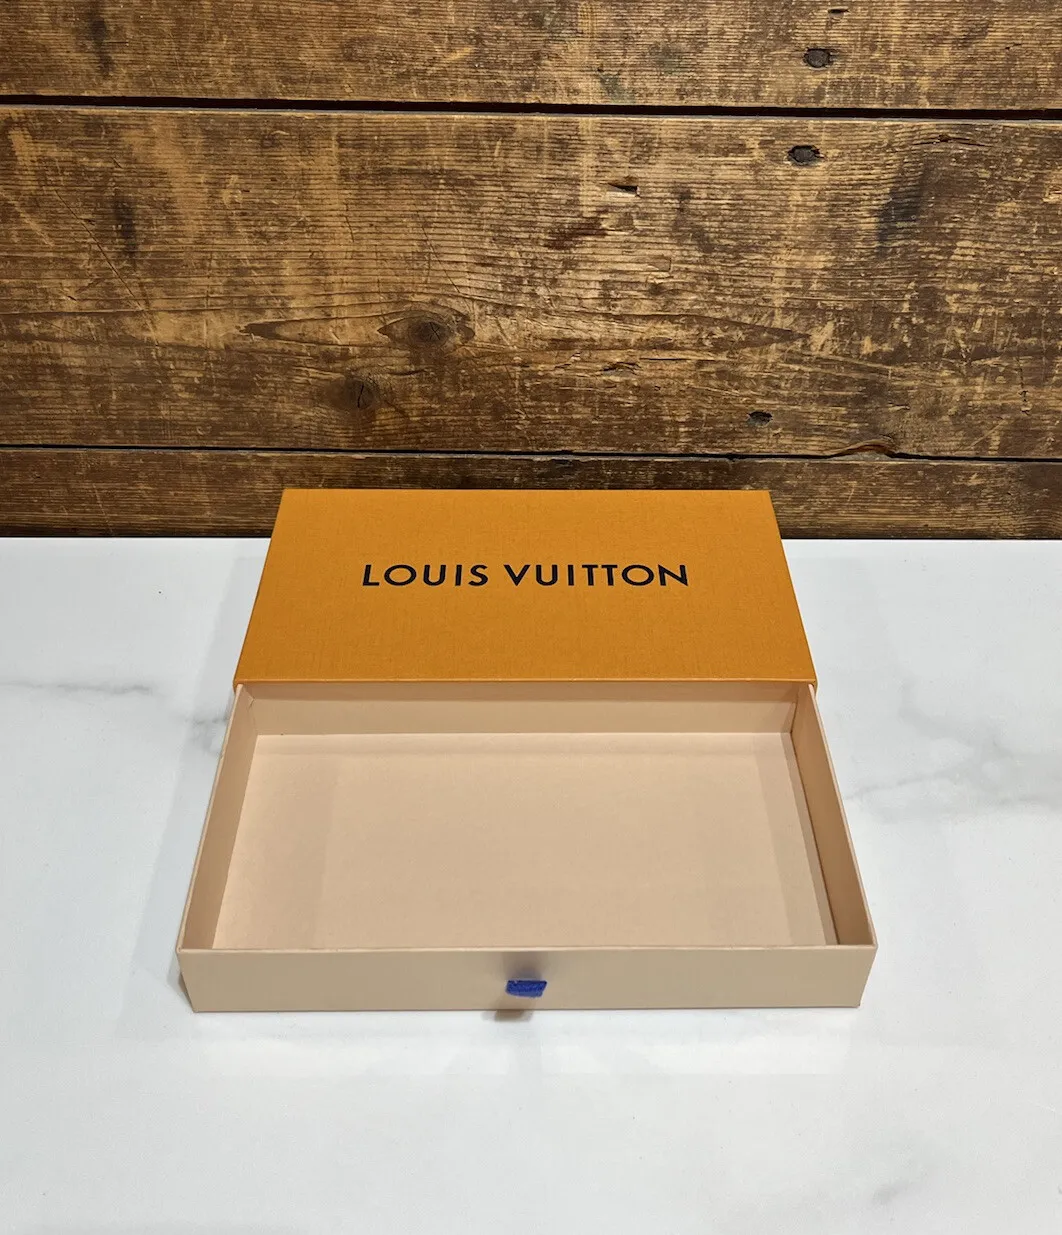 Authentic Louis Vuitton Empty Box 9.5” x 5.5” x 2”